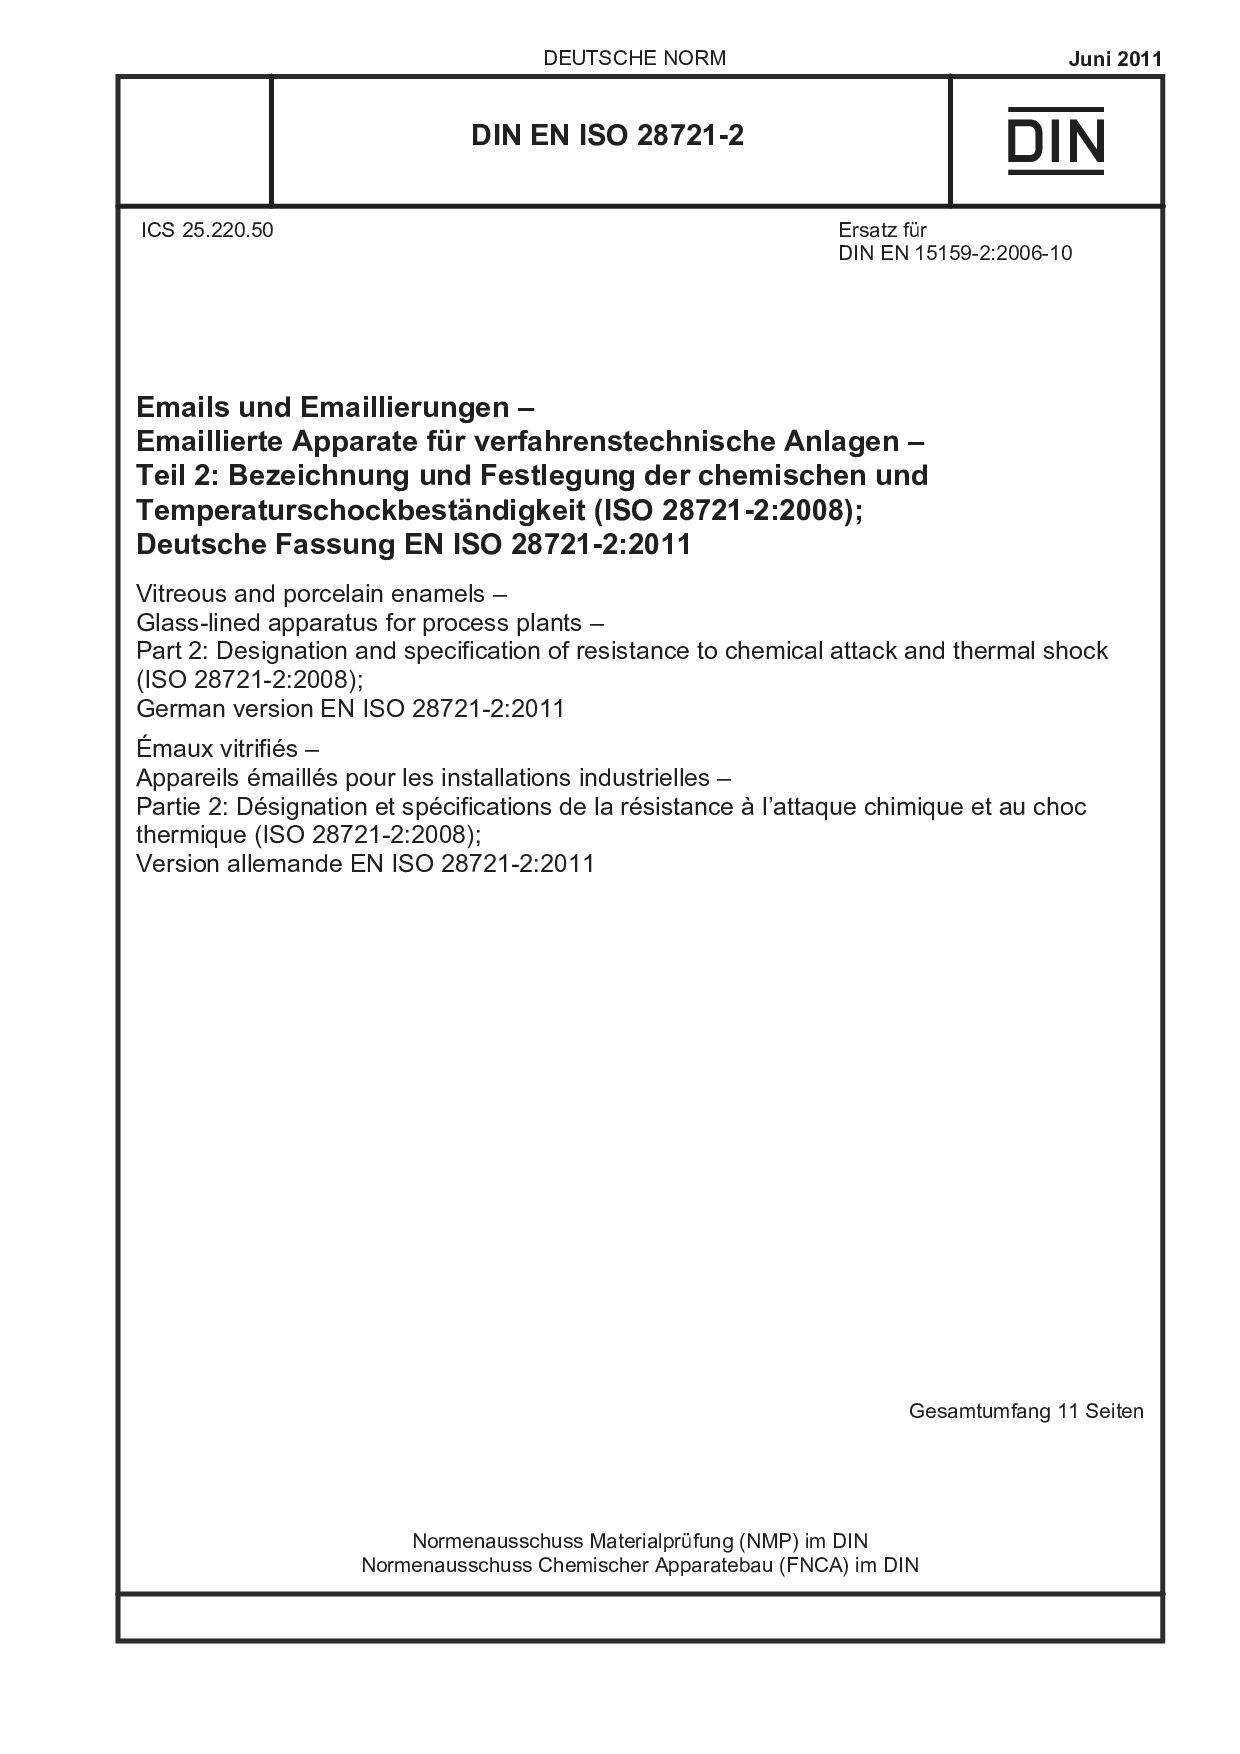 DIN EN ISO 28721-2:2011封面图